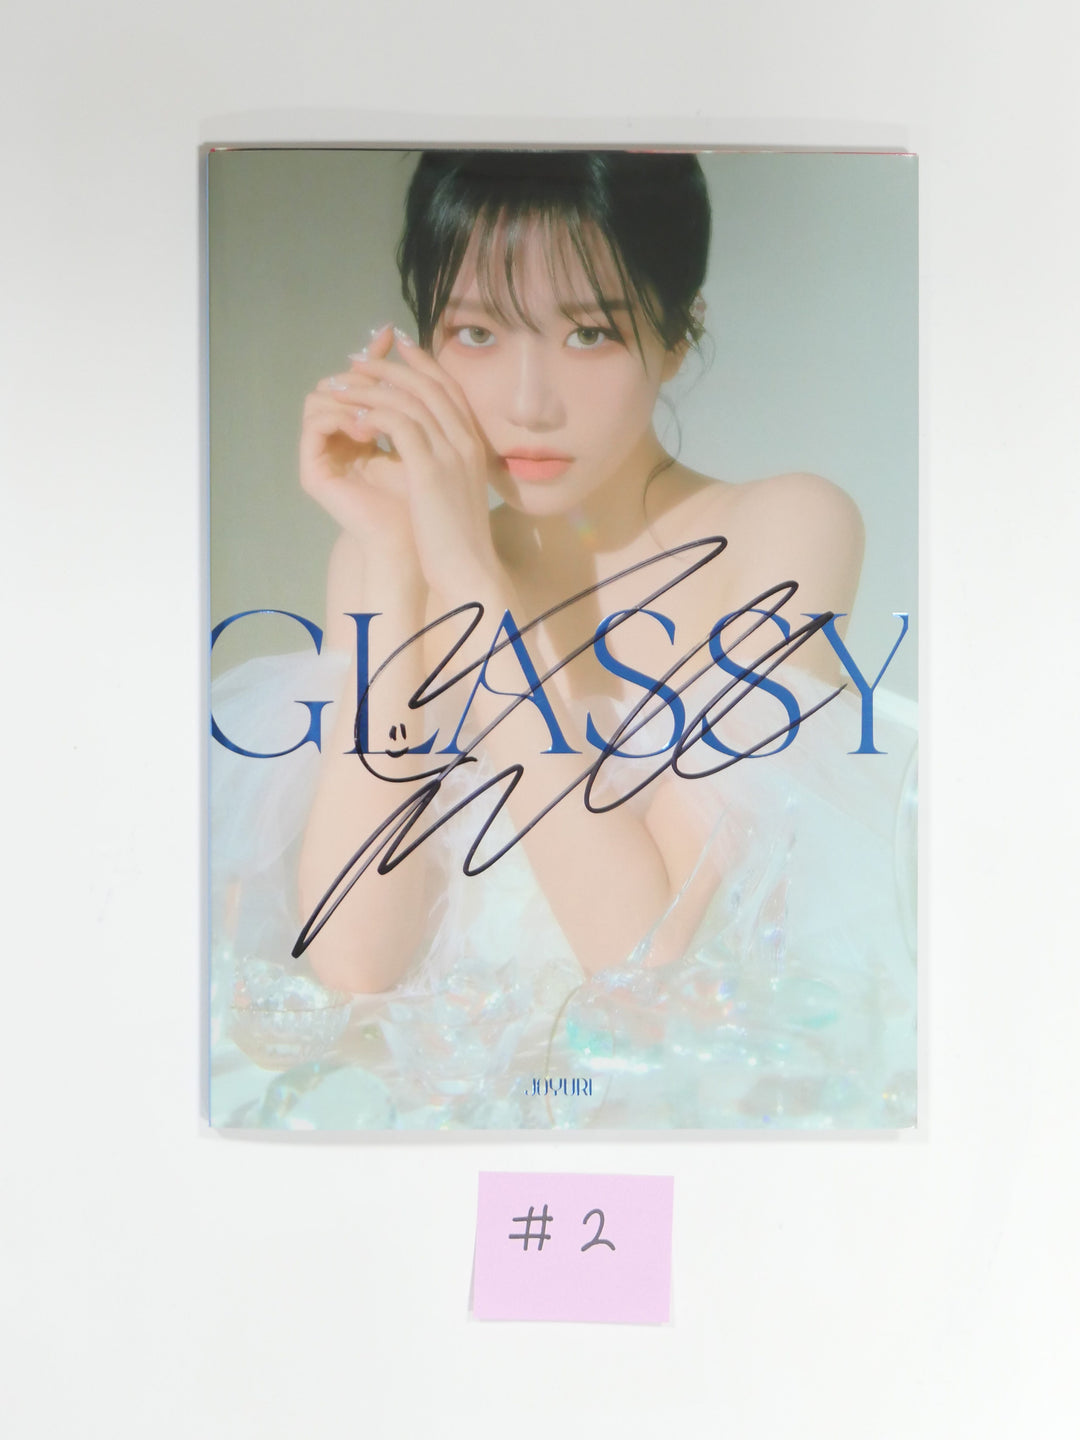 조유리 (Of 아이즈원) 'GLASSY' 1st 싱글 - 친필 사인(사인) 프로모 앨범